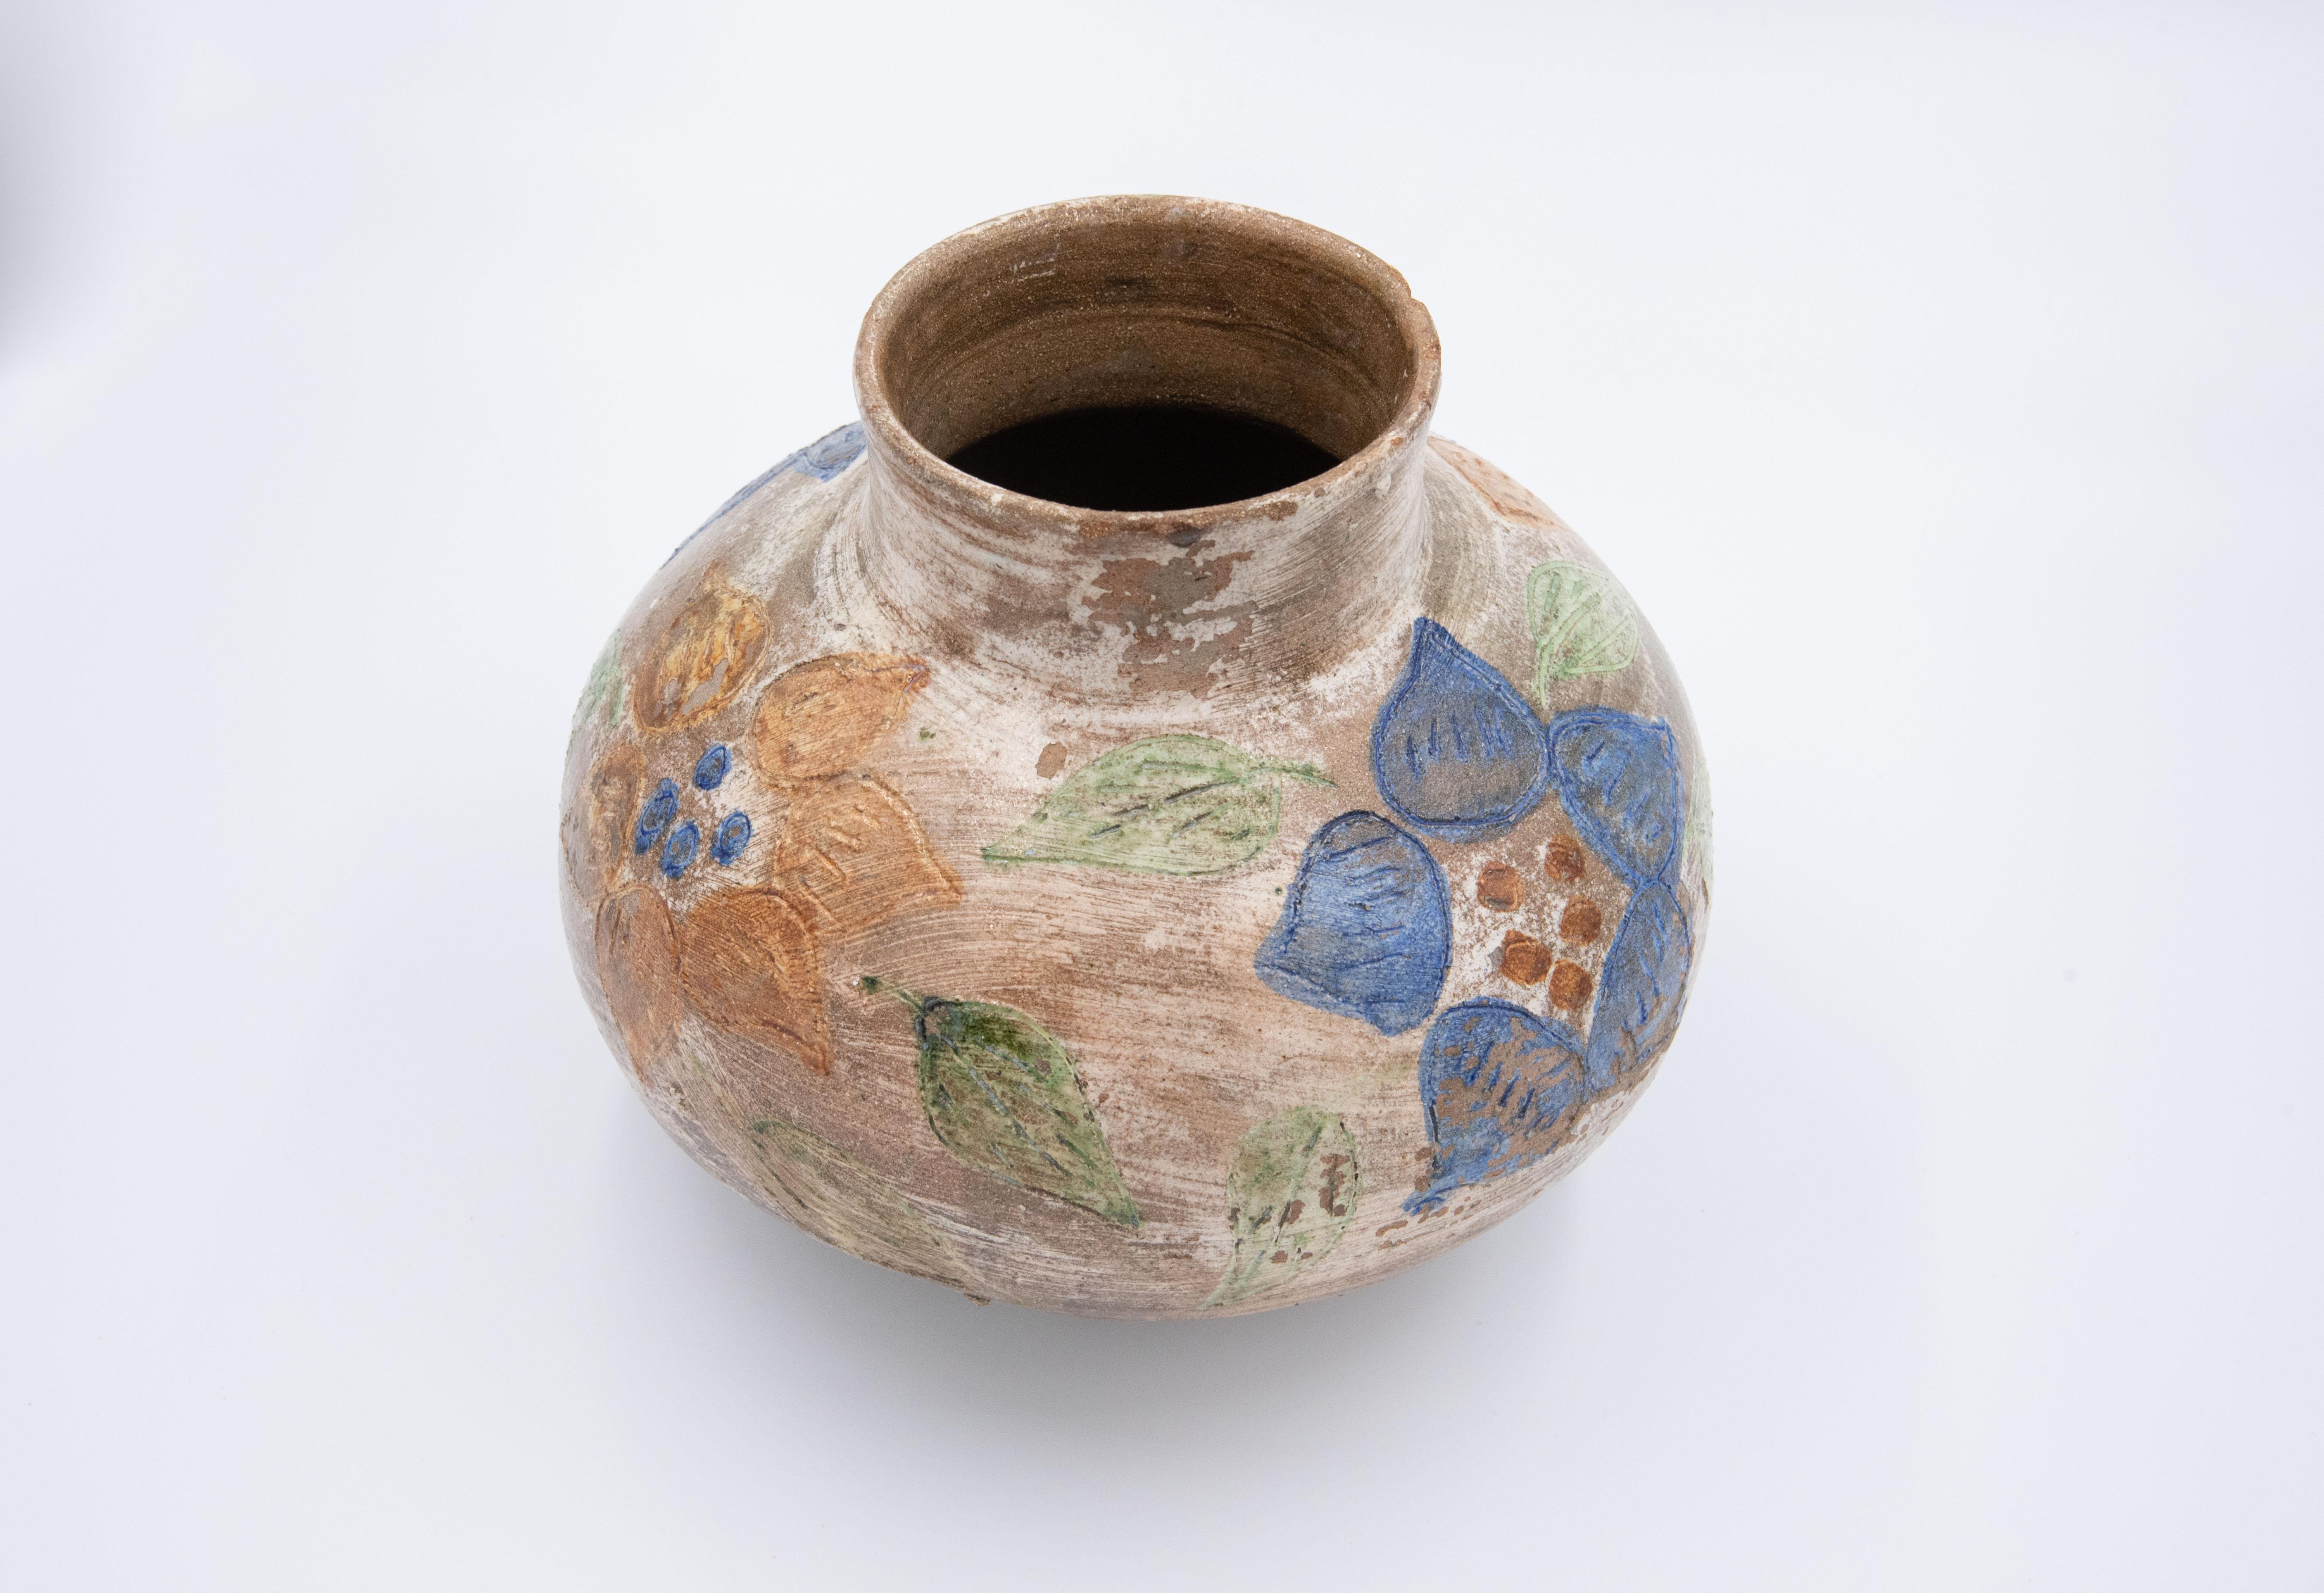 Dolores Porras Enríquez est connue dans tout le Mexique et dans le monde entier pour être la créatrice d'une technique enracinée dans la terre de Oaxaca : la poterie de couleur naturelle, émaillée et décorée de motifs floraux et d'animaux colorés.